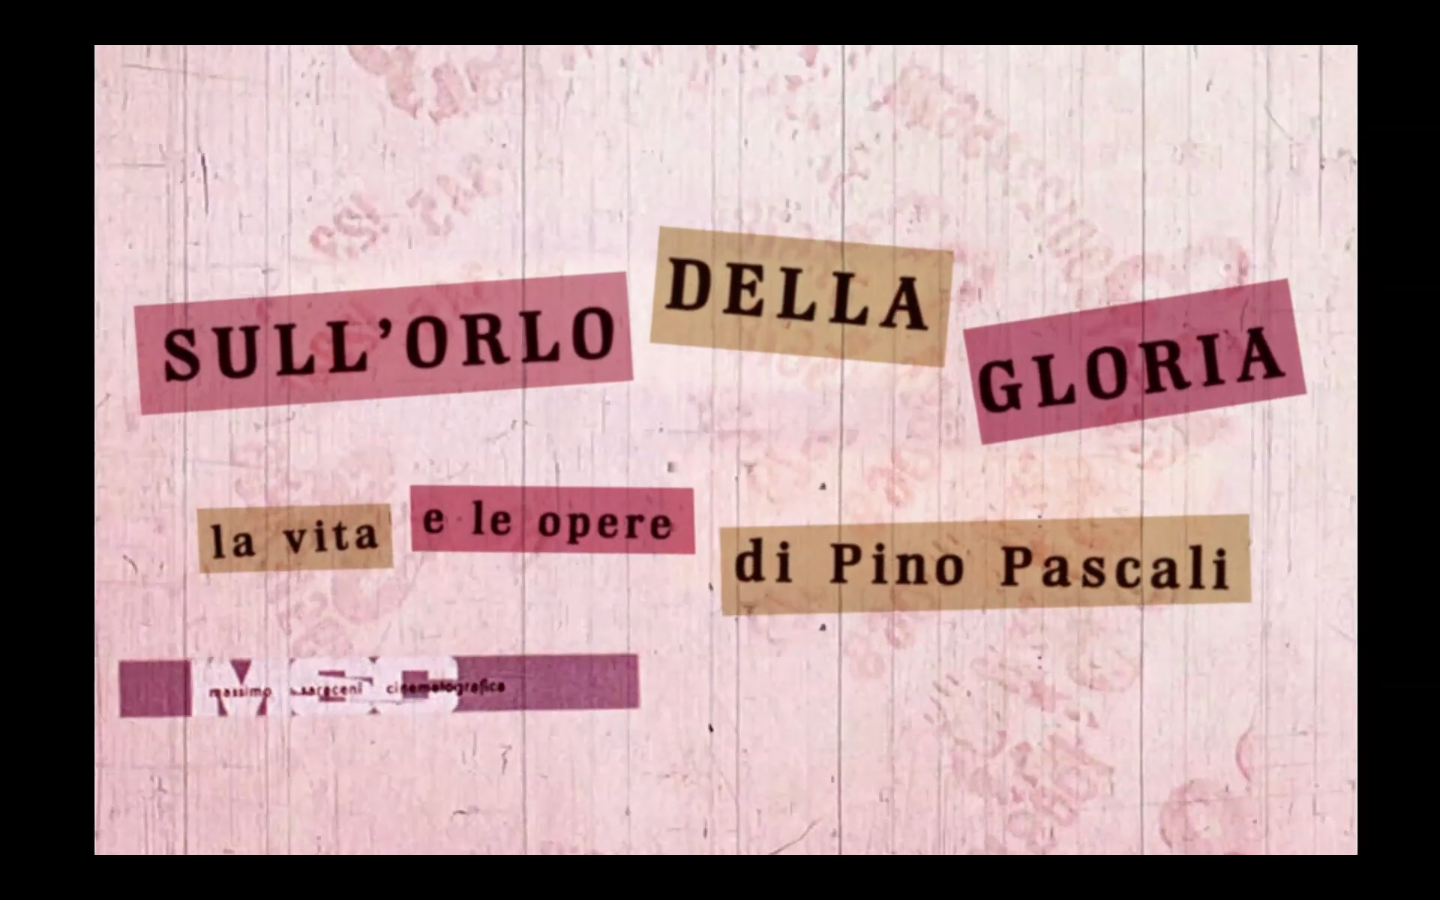 Cinema in piazza a New York. Magazzino Italian Art presenta dodici film su artisti italiani del dopoguerra